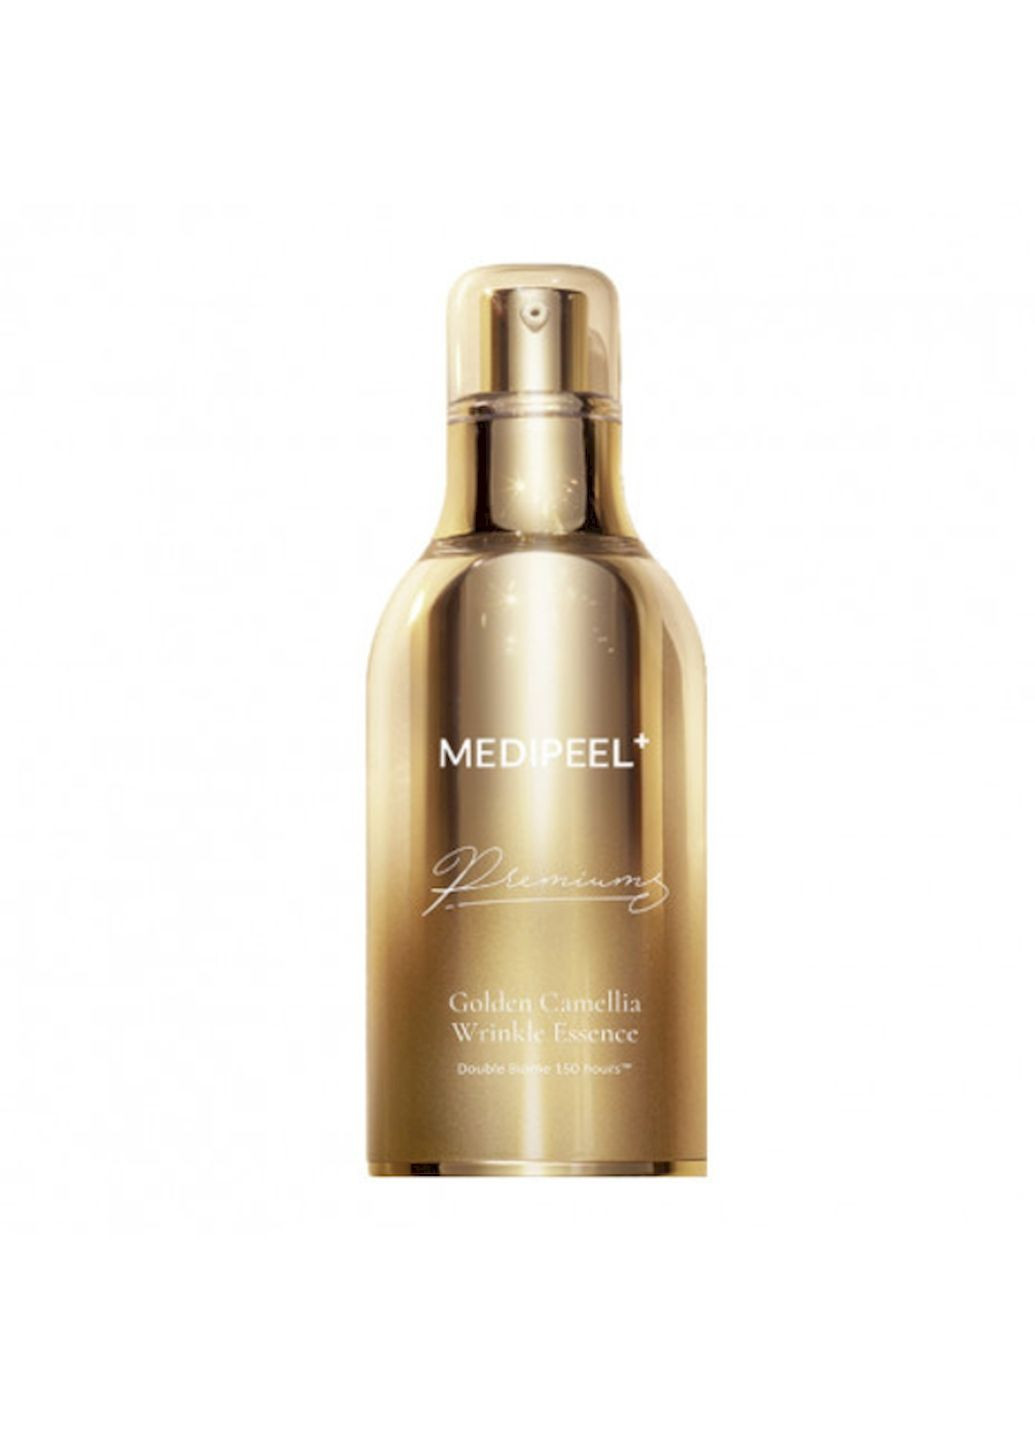 Эссенция Premium Golden Camellia Wrinkle Essence для повышения эластичности кожи и уменьшения морщин, 50 мл Medi Peel (294058450)